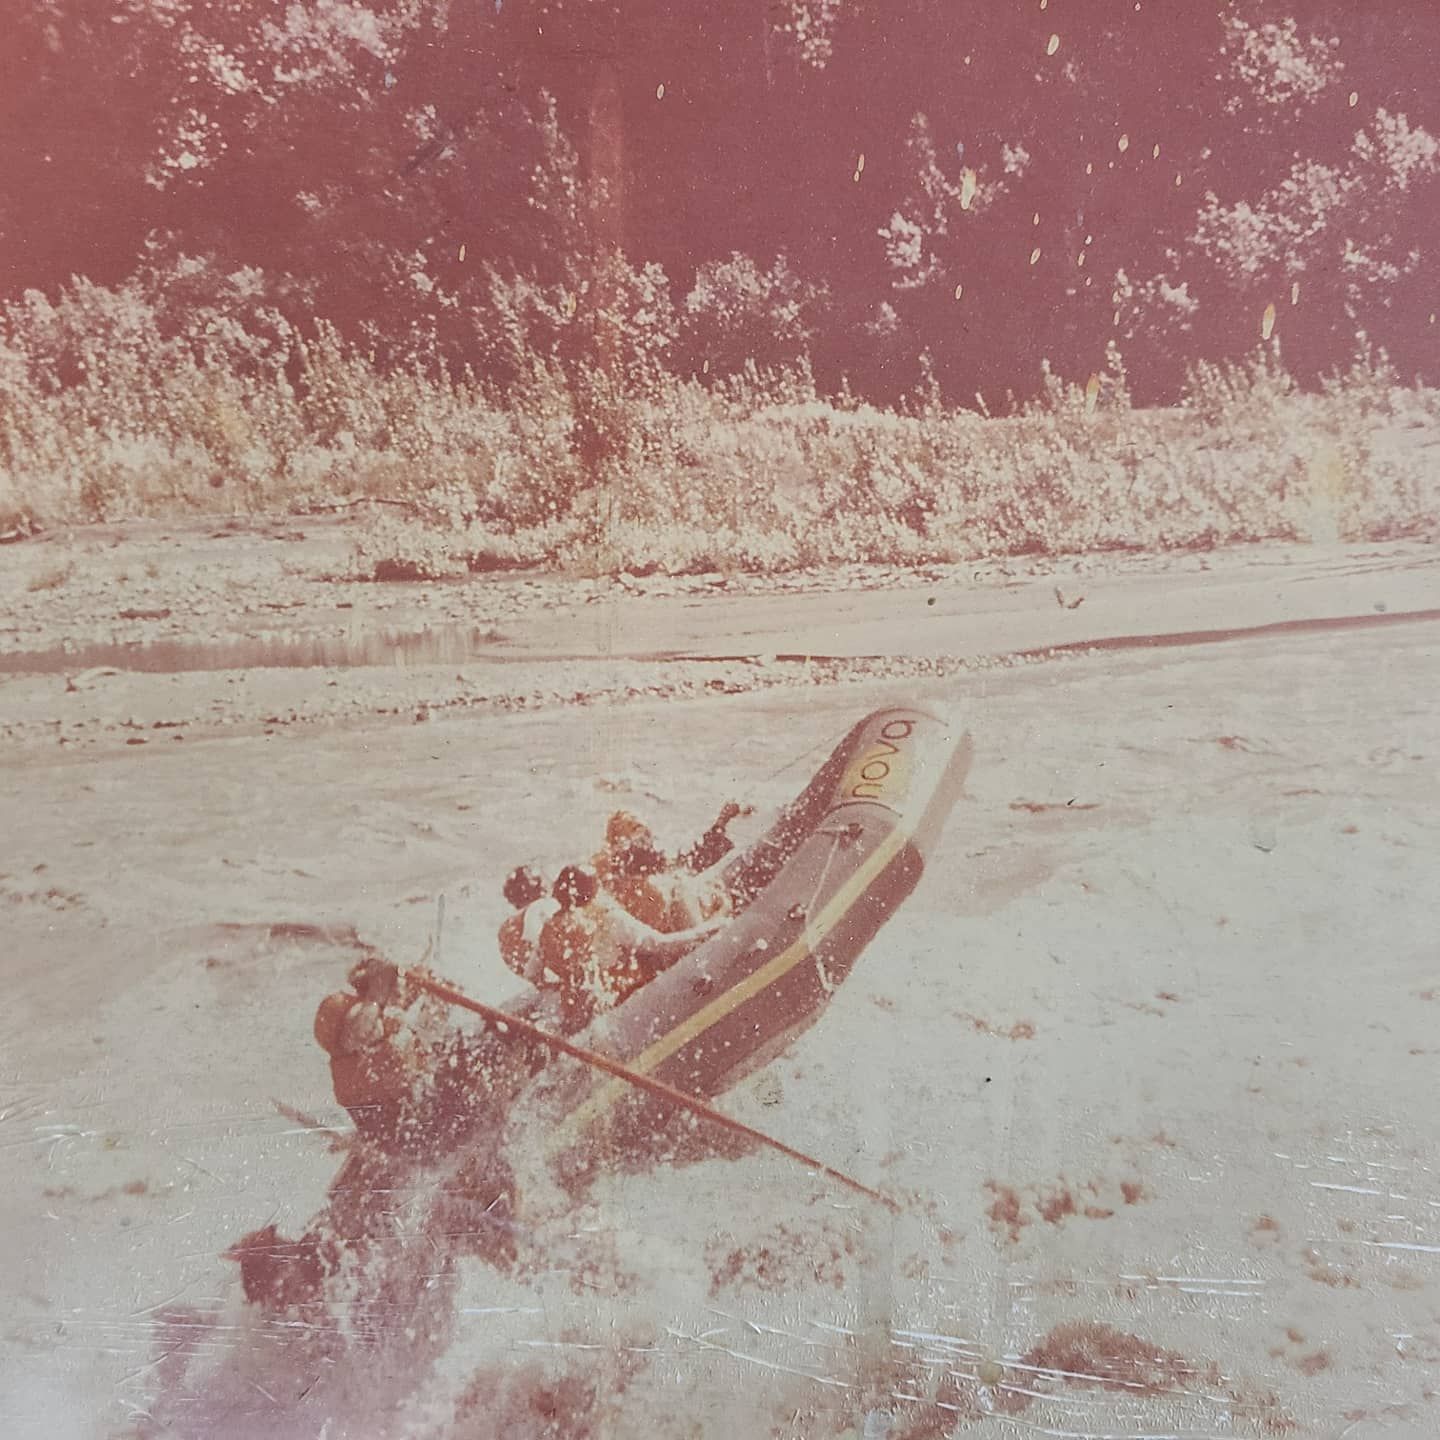 Le rafting en Alaska dans les années 70